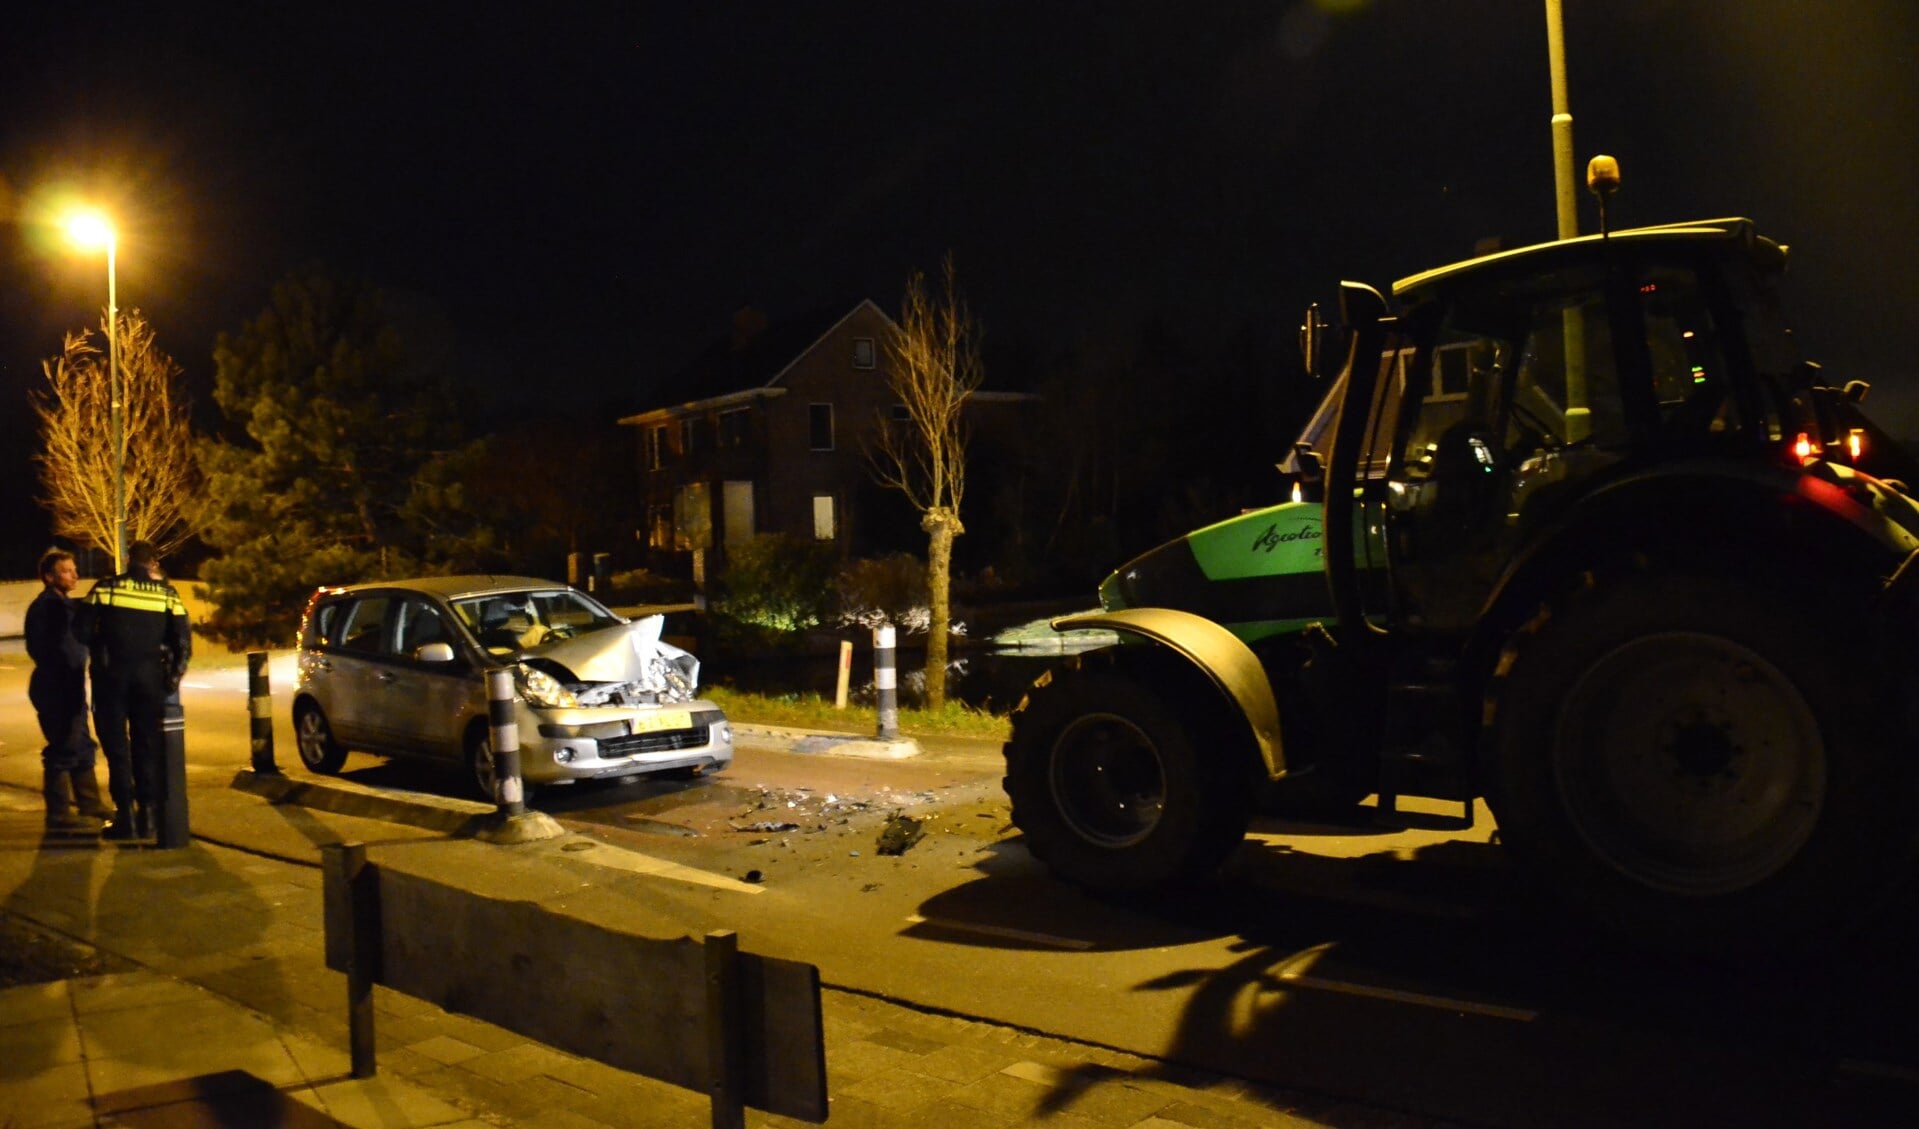 • De tractor en auto botsten bij de wegversmalling op elkaar. (foto: Marco van Bemmel)